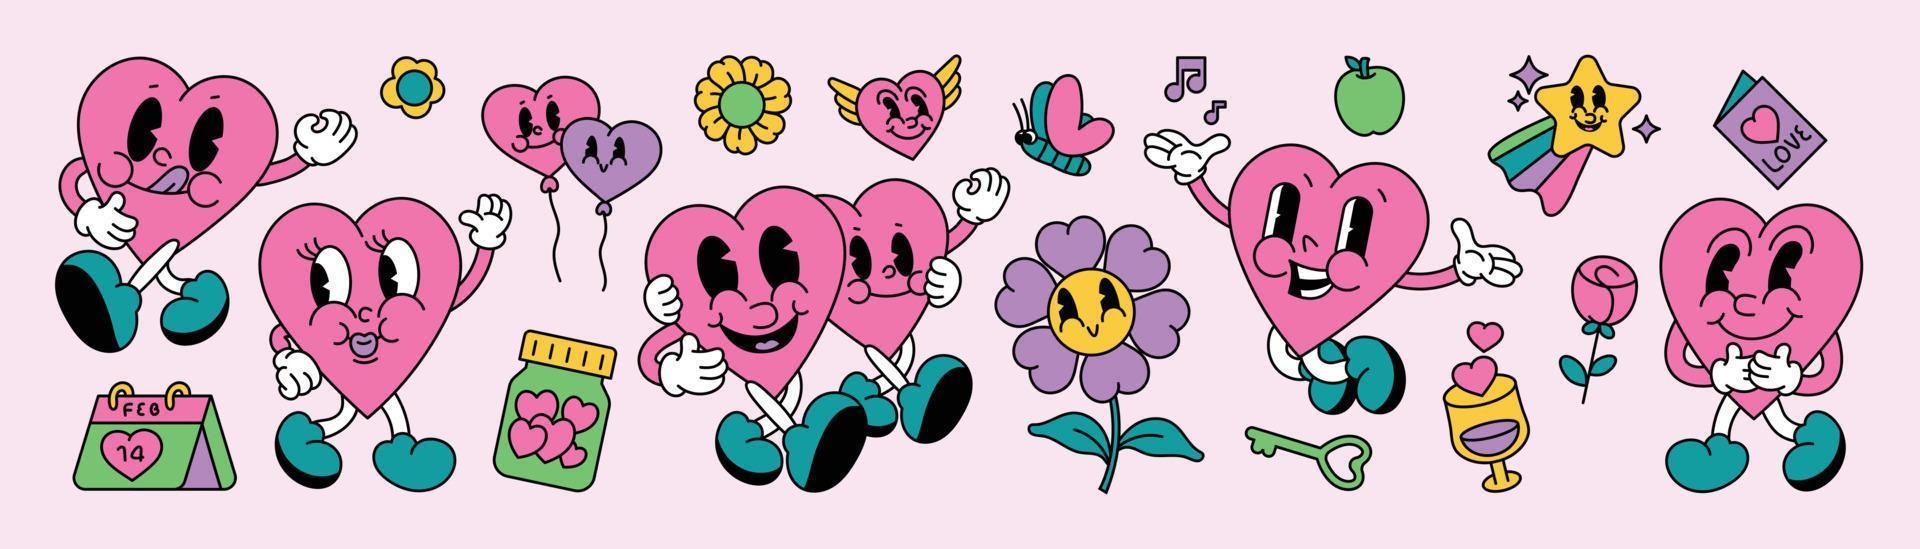 Conjunto de vetores de elemento doodle groovy dos anos 70. coleção de hippie retrô em quadrinhos fofa de corações lúdicos, flores, chave, balão, calendário, maçã, borboleta. design para cartão de dia dos namorados, decorativo, adesivo, impressão.